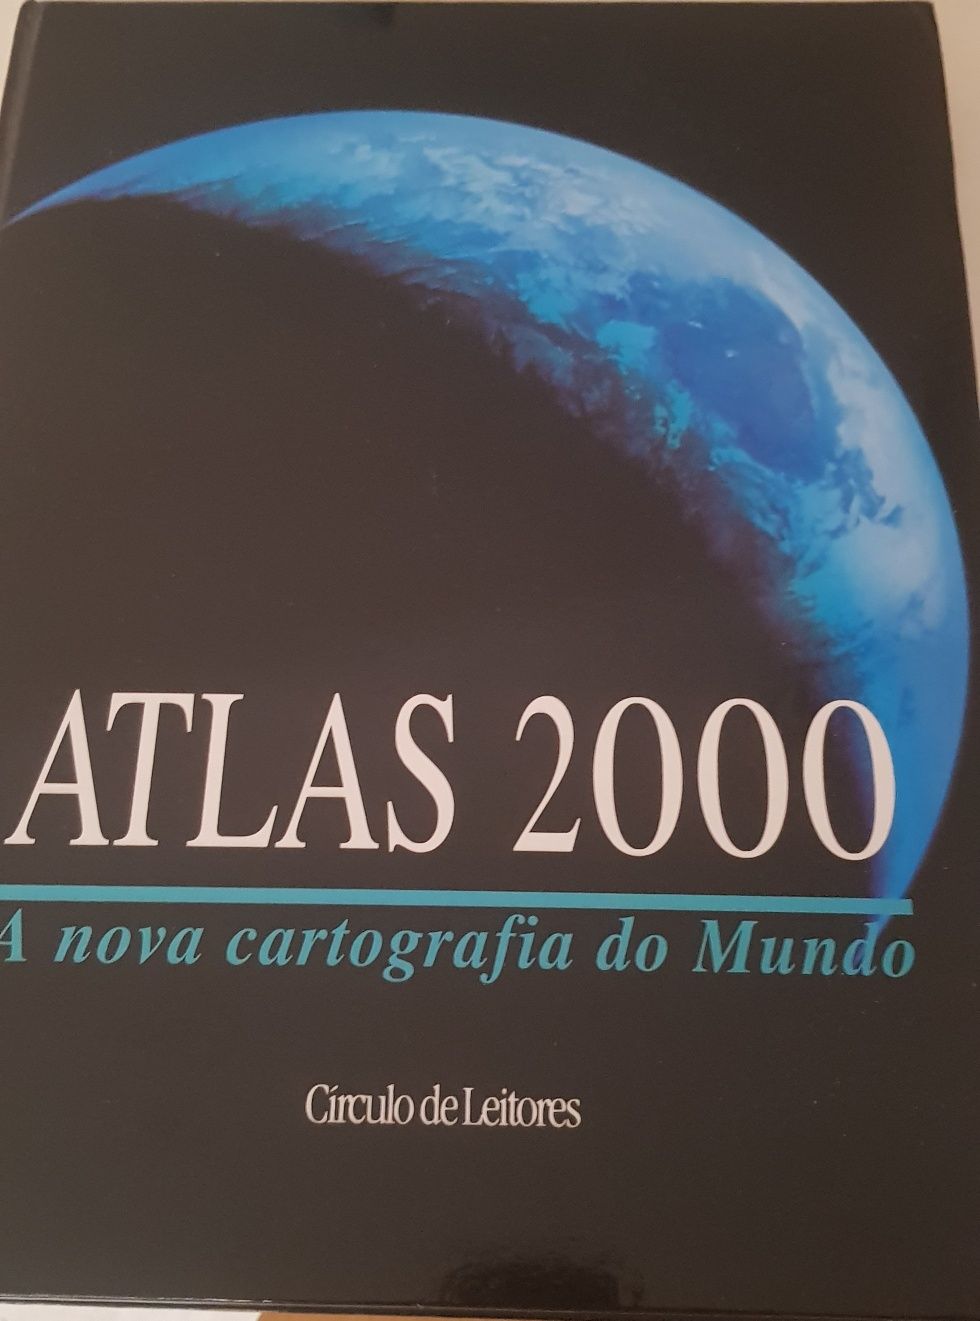 Enciclopedia Atlas 2000 nova cartografia do mundo